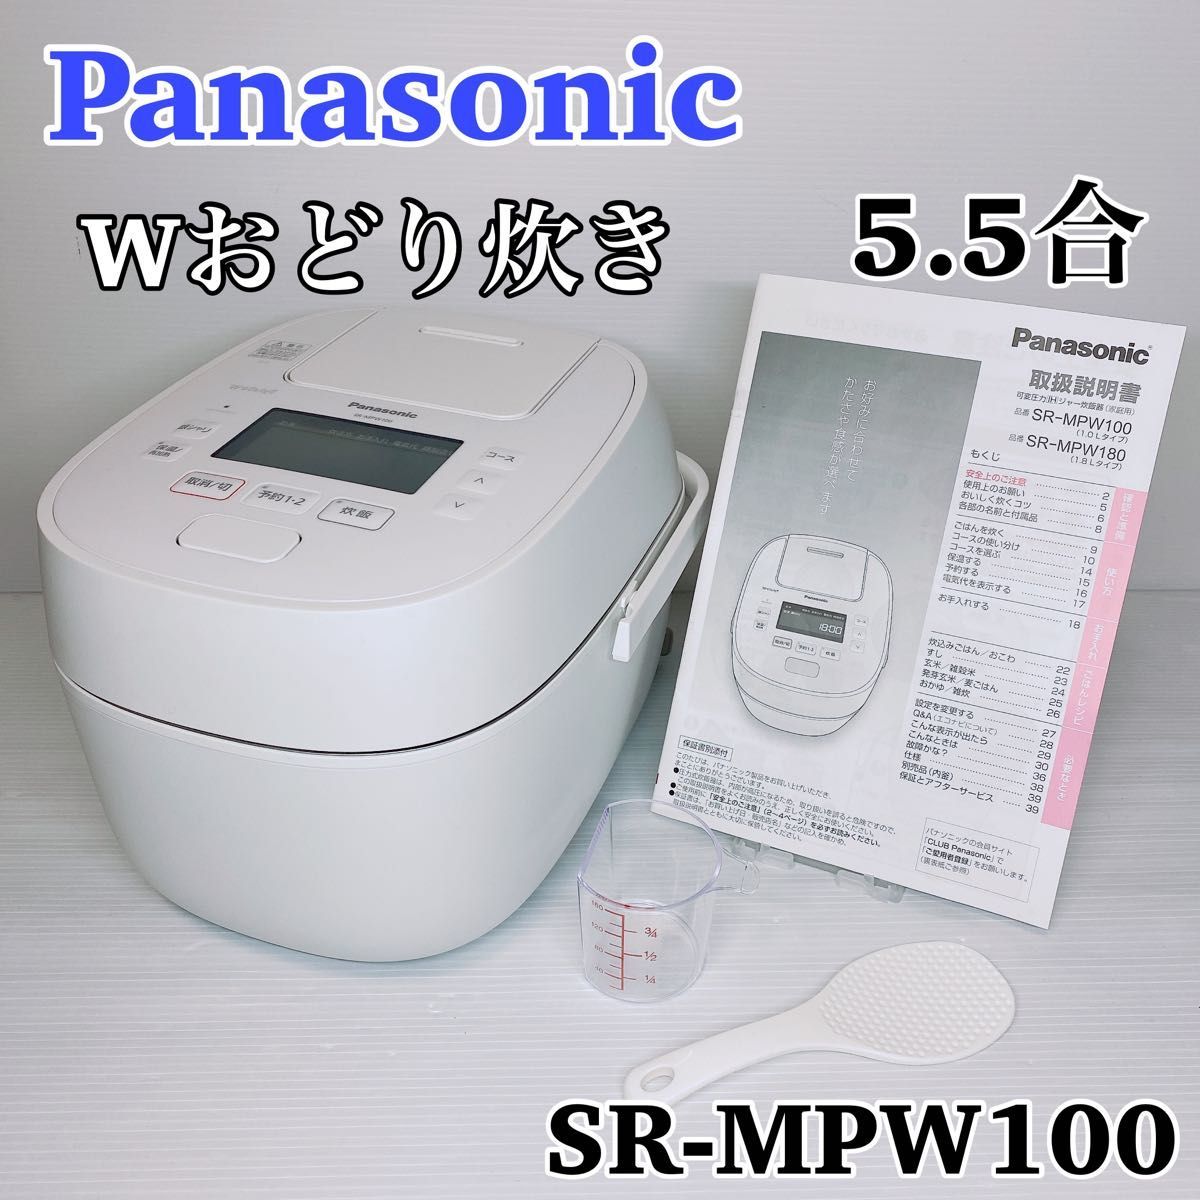 Panasonic パナソニック 炊飯器 5.5合 可変圧力IH式 Wおどり炊き SR